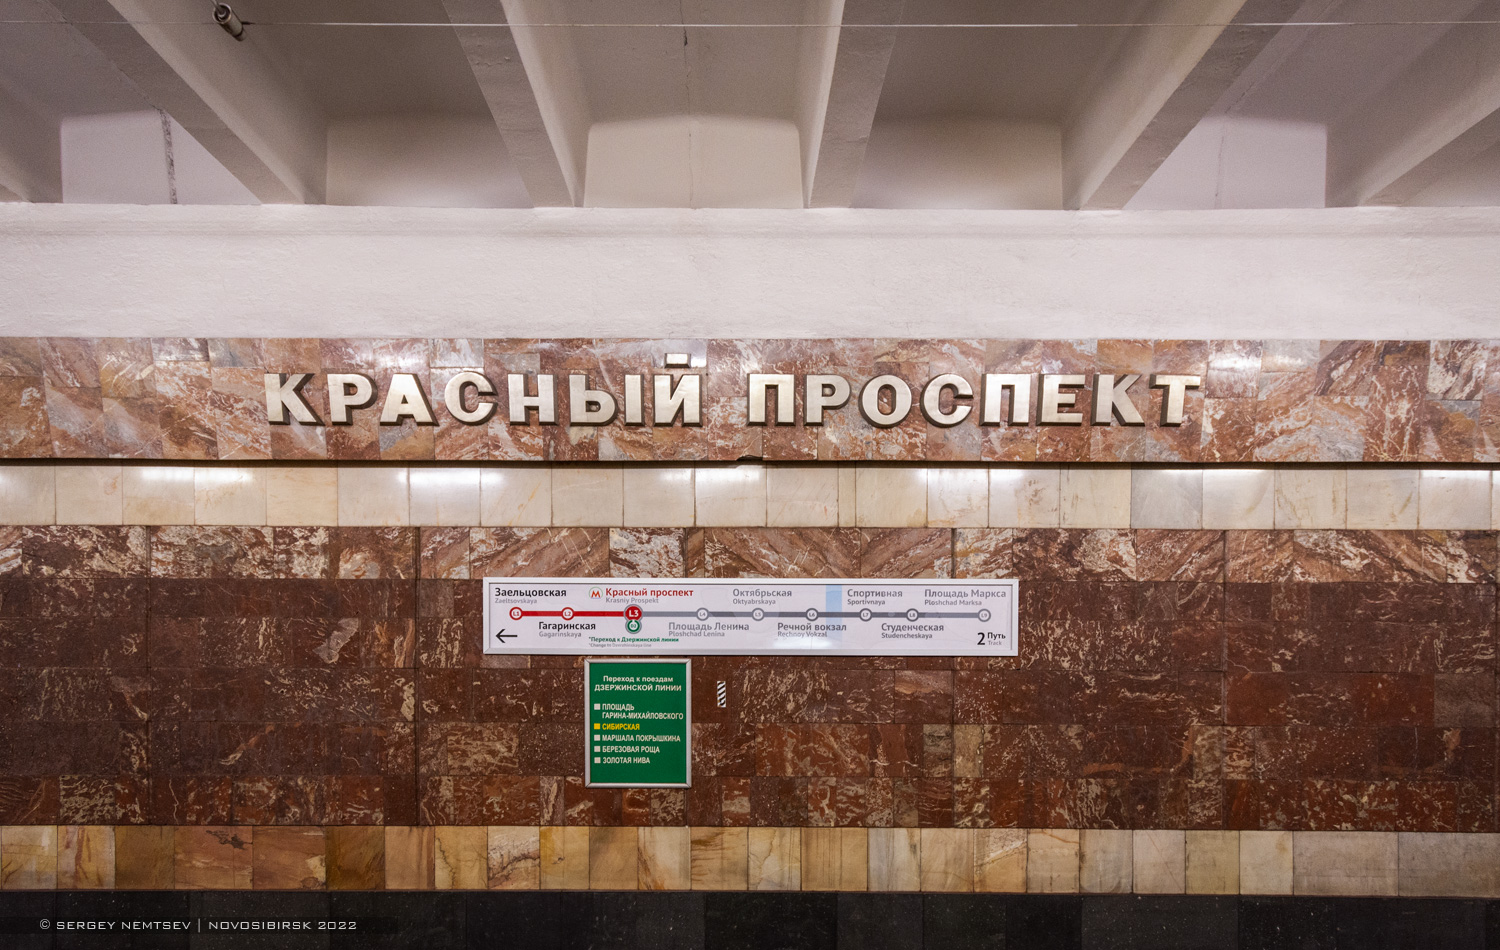 Новосибирск — Ленинская / Дзержинская линия — станция "Красный проспект"